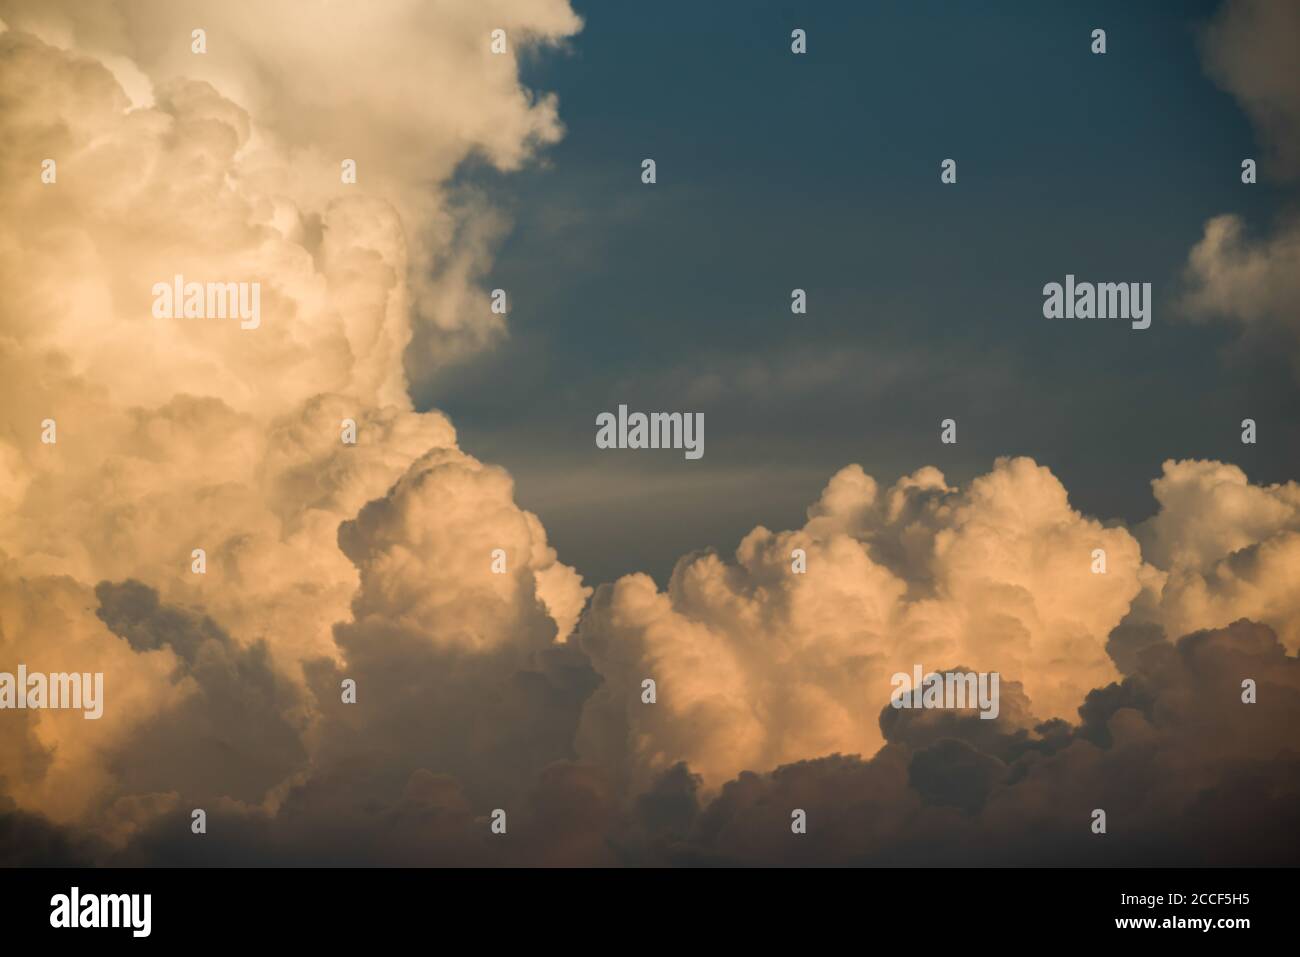 Beruhigende Wolkenlandschaft mit schönem blauen Hintergrund und scharfen geschwollenen Wolken. Stockfoto